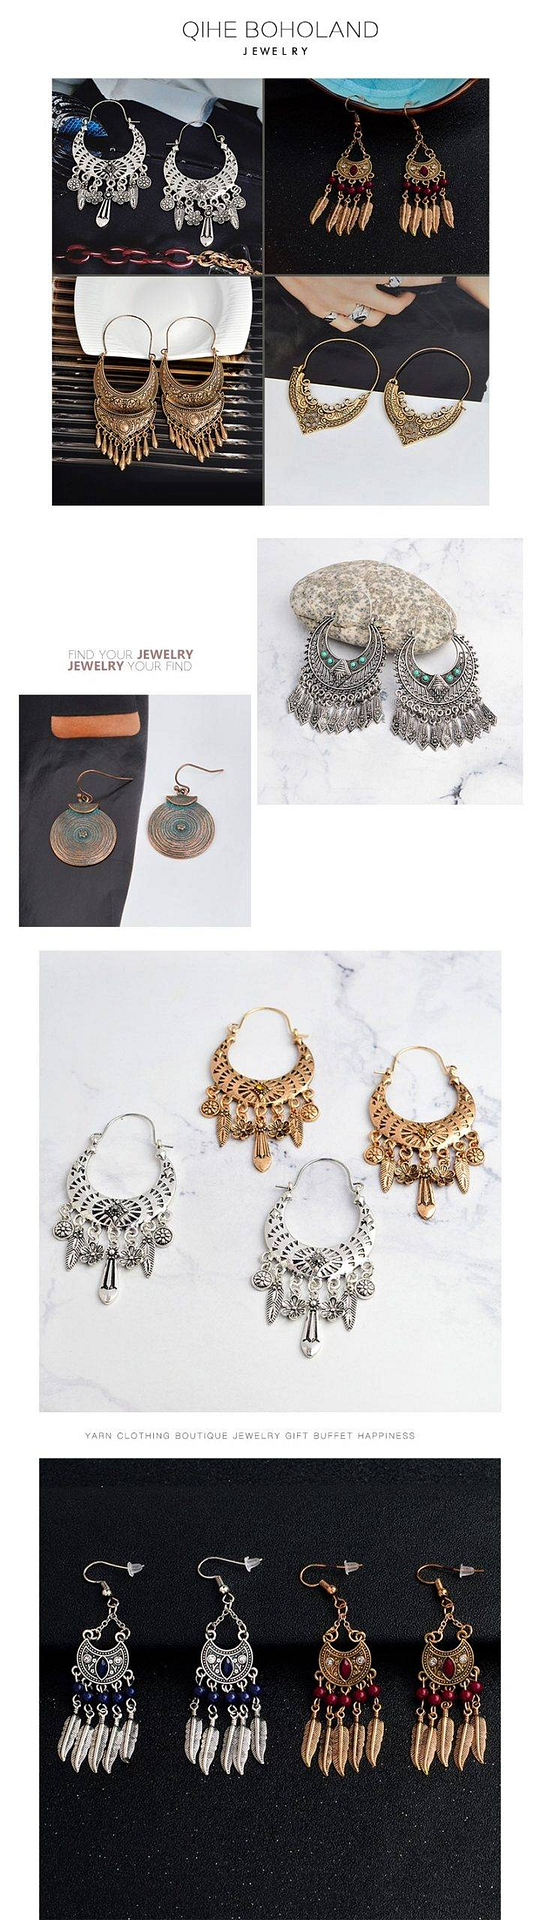 Indien longue boucle d'oreille or argent couleur métal gland Eardrop Vintage ethnique balancent boucle d'oreille bijoux de fête de mariage femmes accessoires